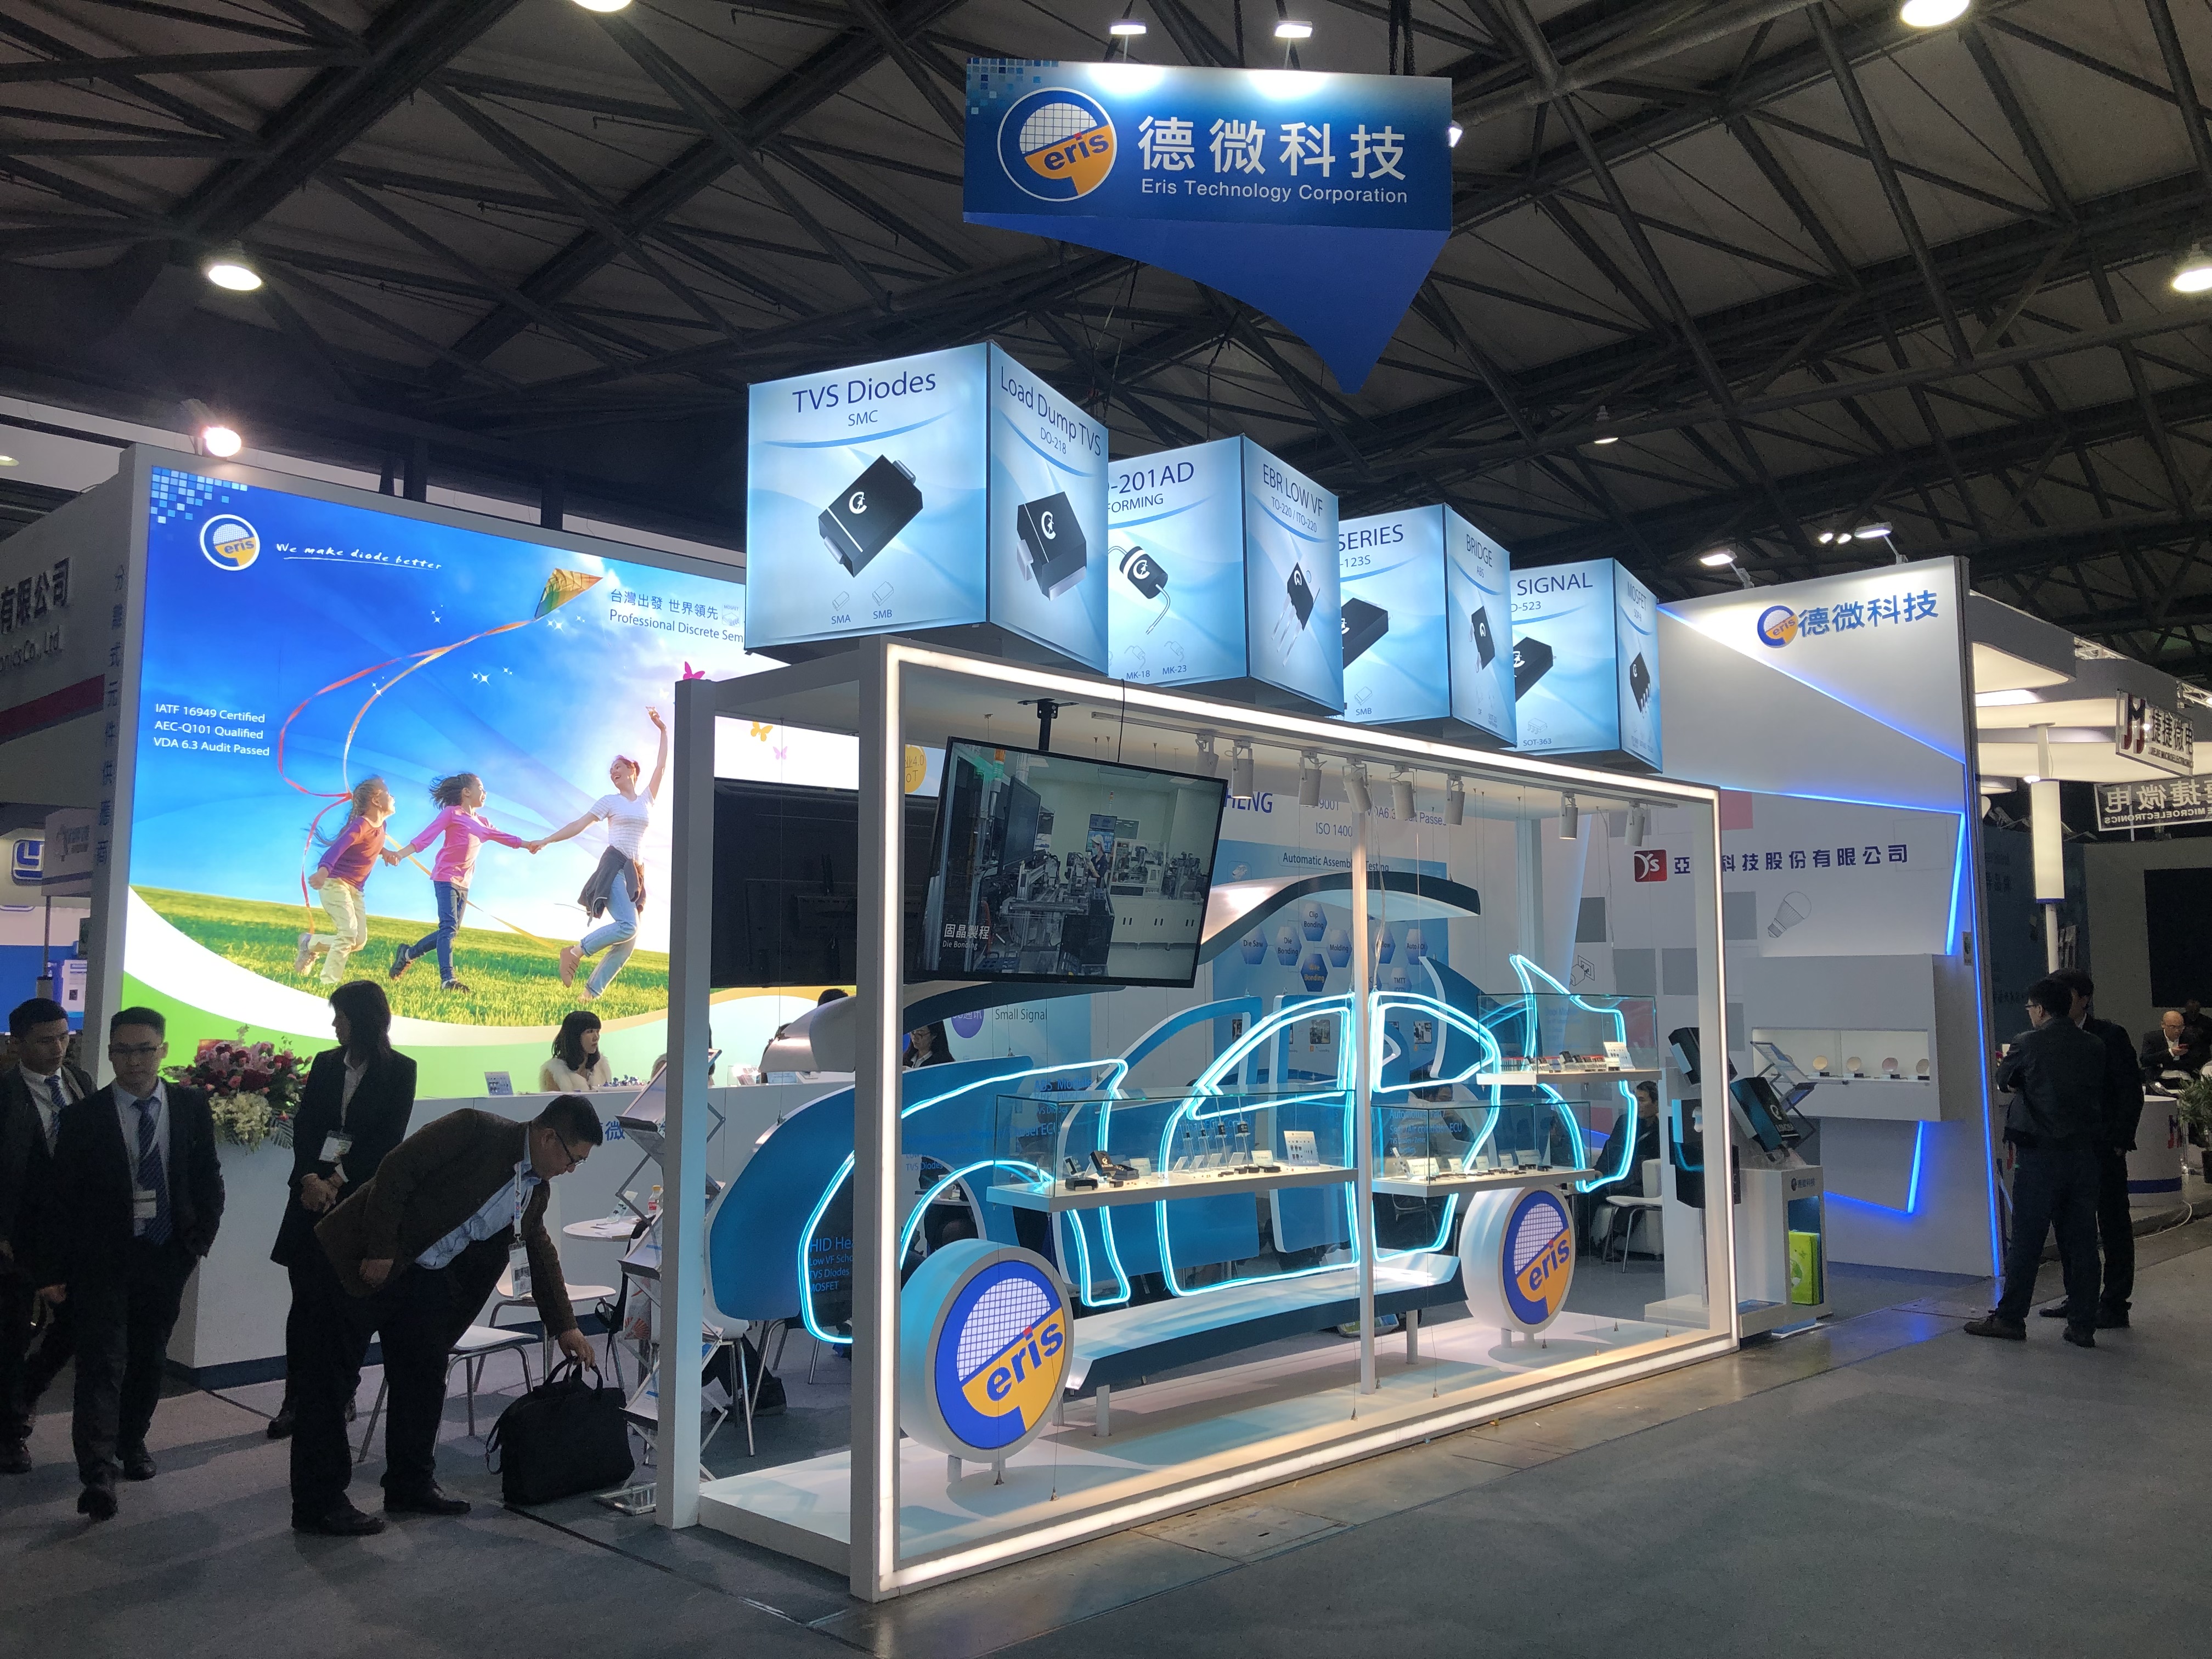 2019年 德微科技上海電子展